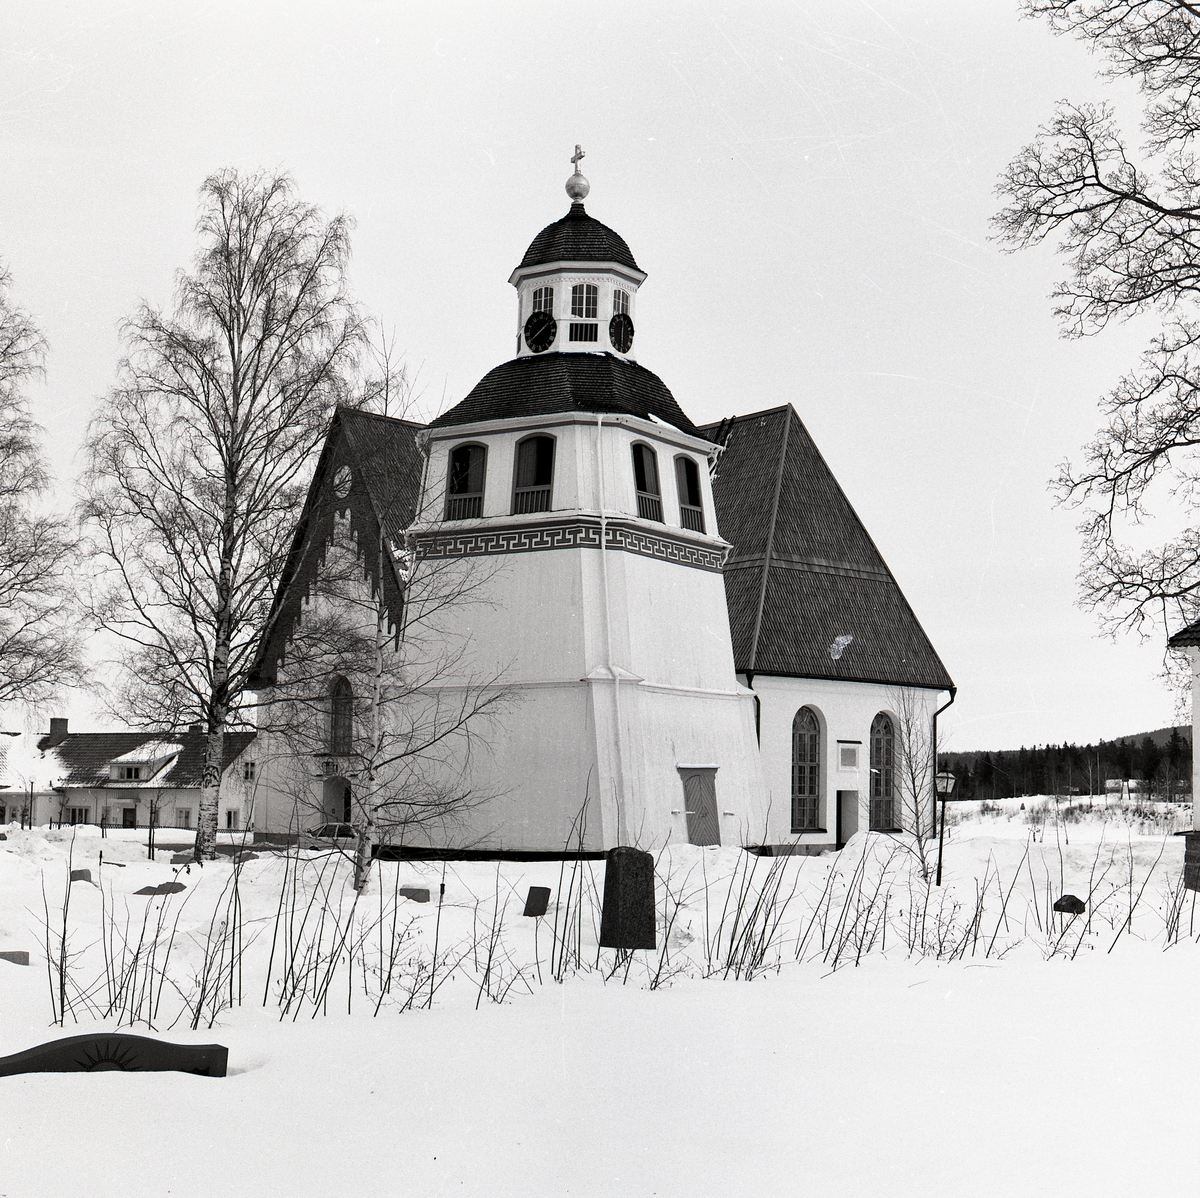 Arbrå stenkyrka, klocktorn och kyrkogård i snö.